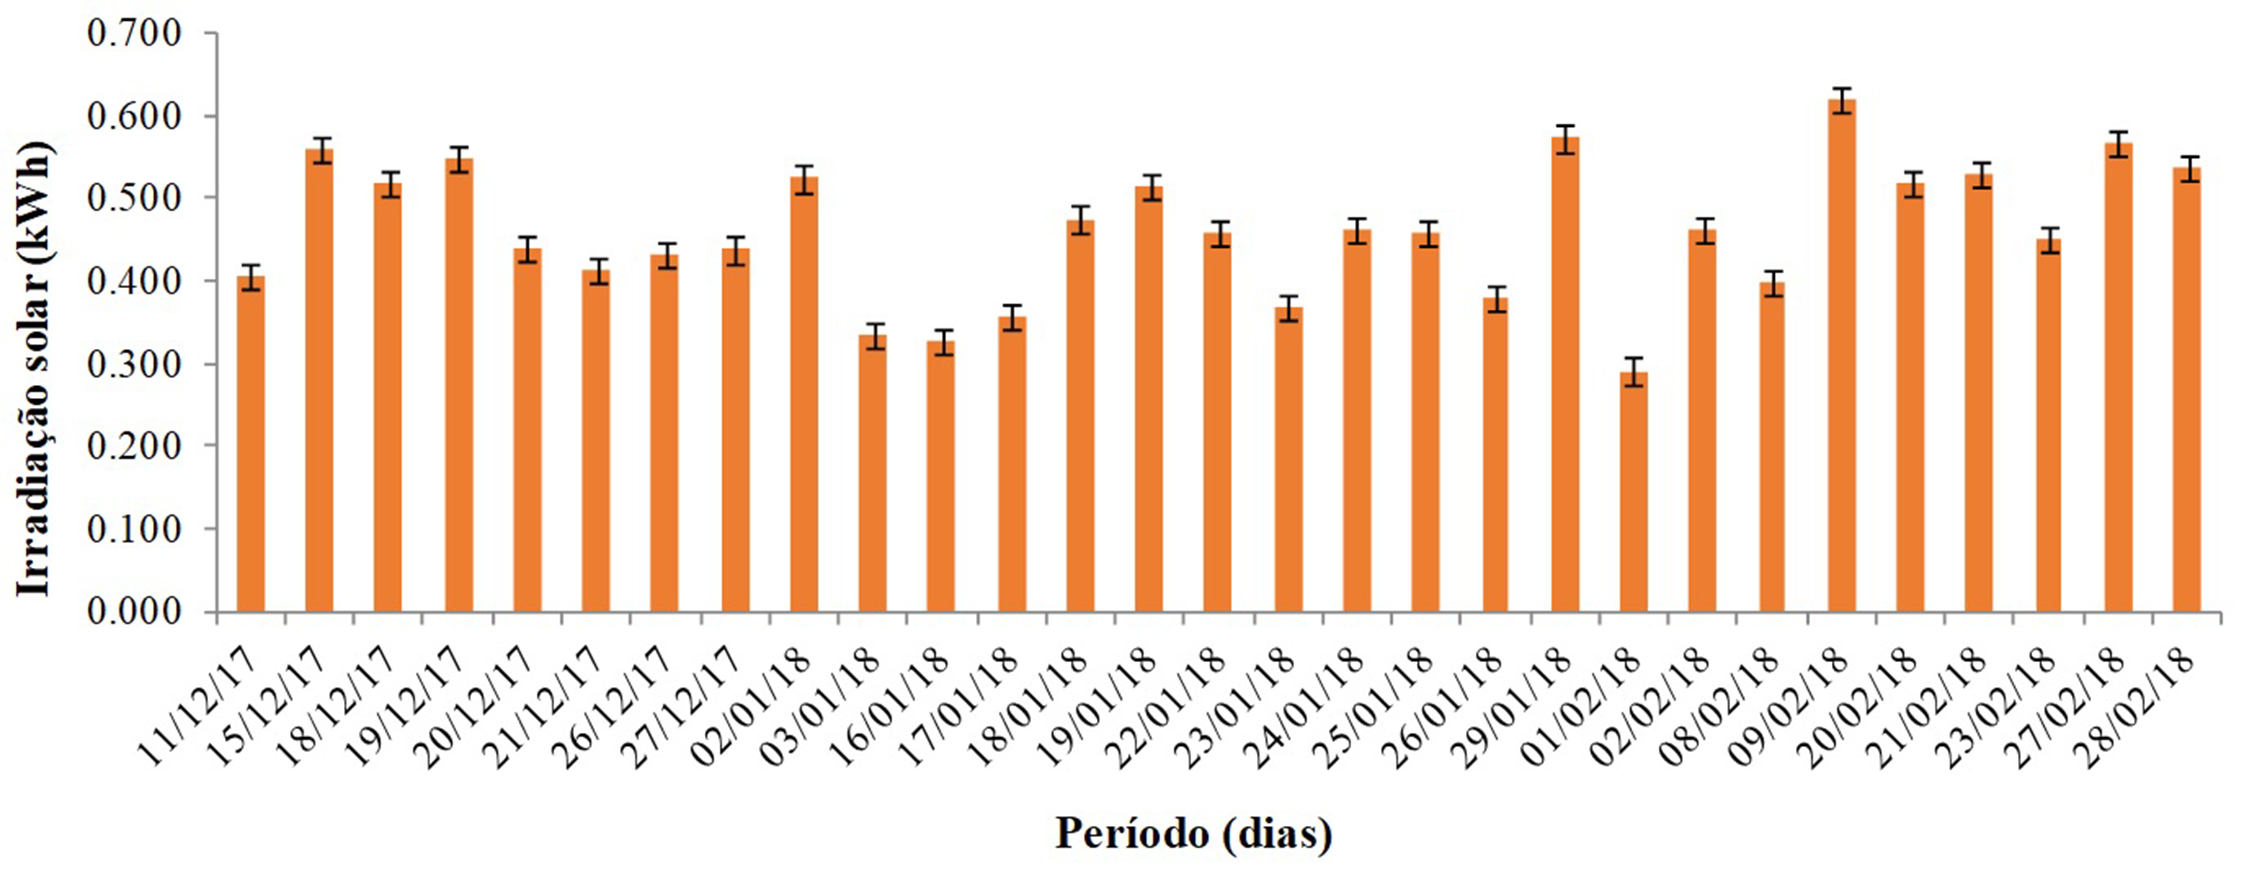 Gráfico de irradiação solar diária, em kWh